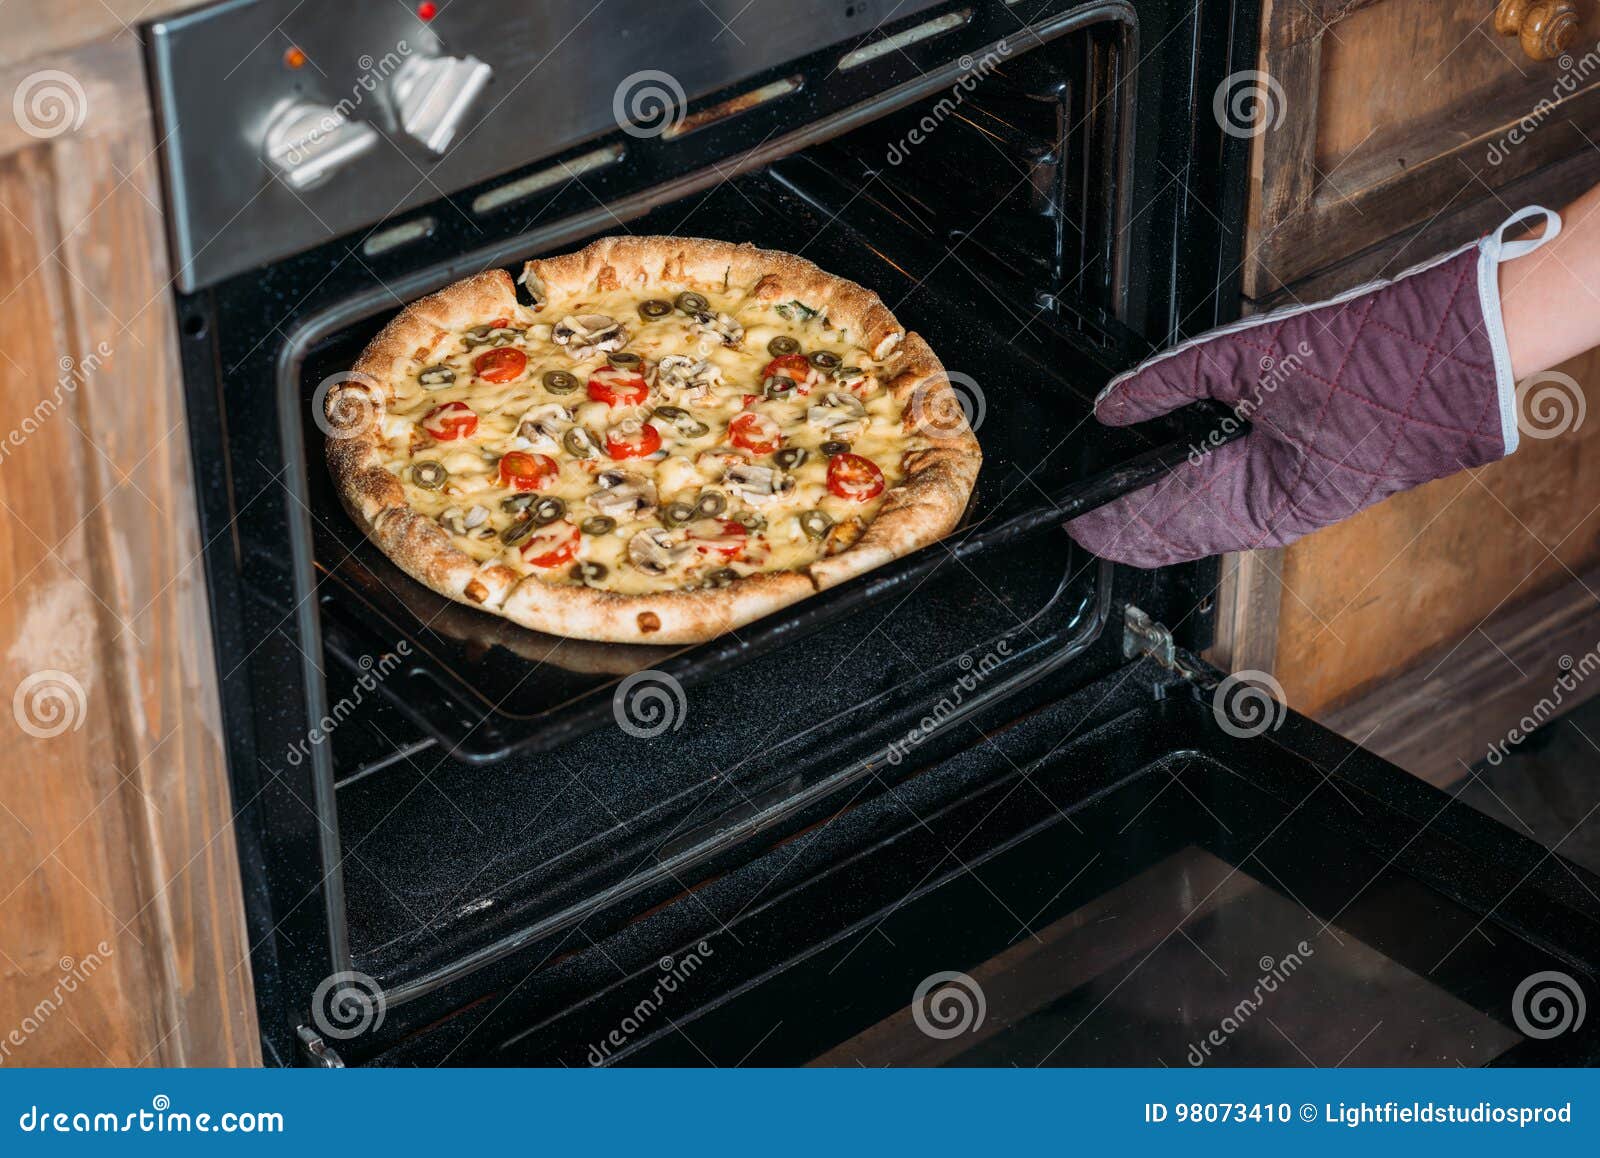 если пицца пересохла в духовке что делать фото 58